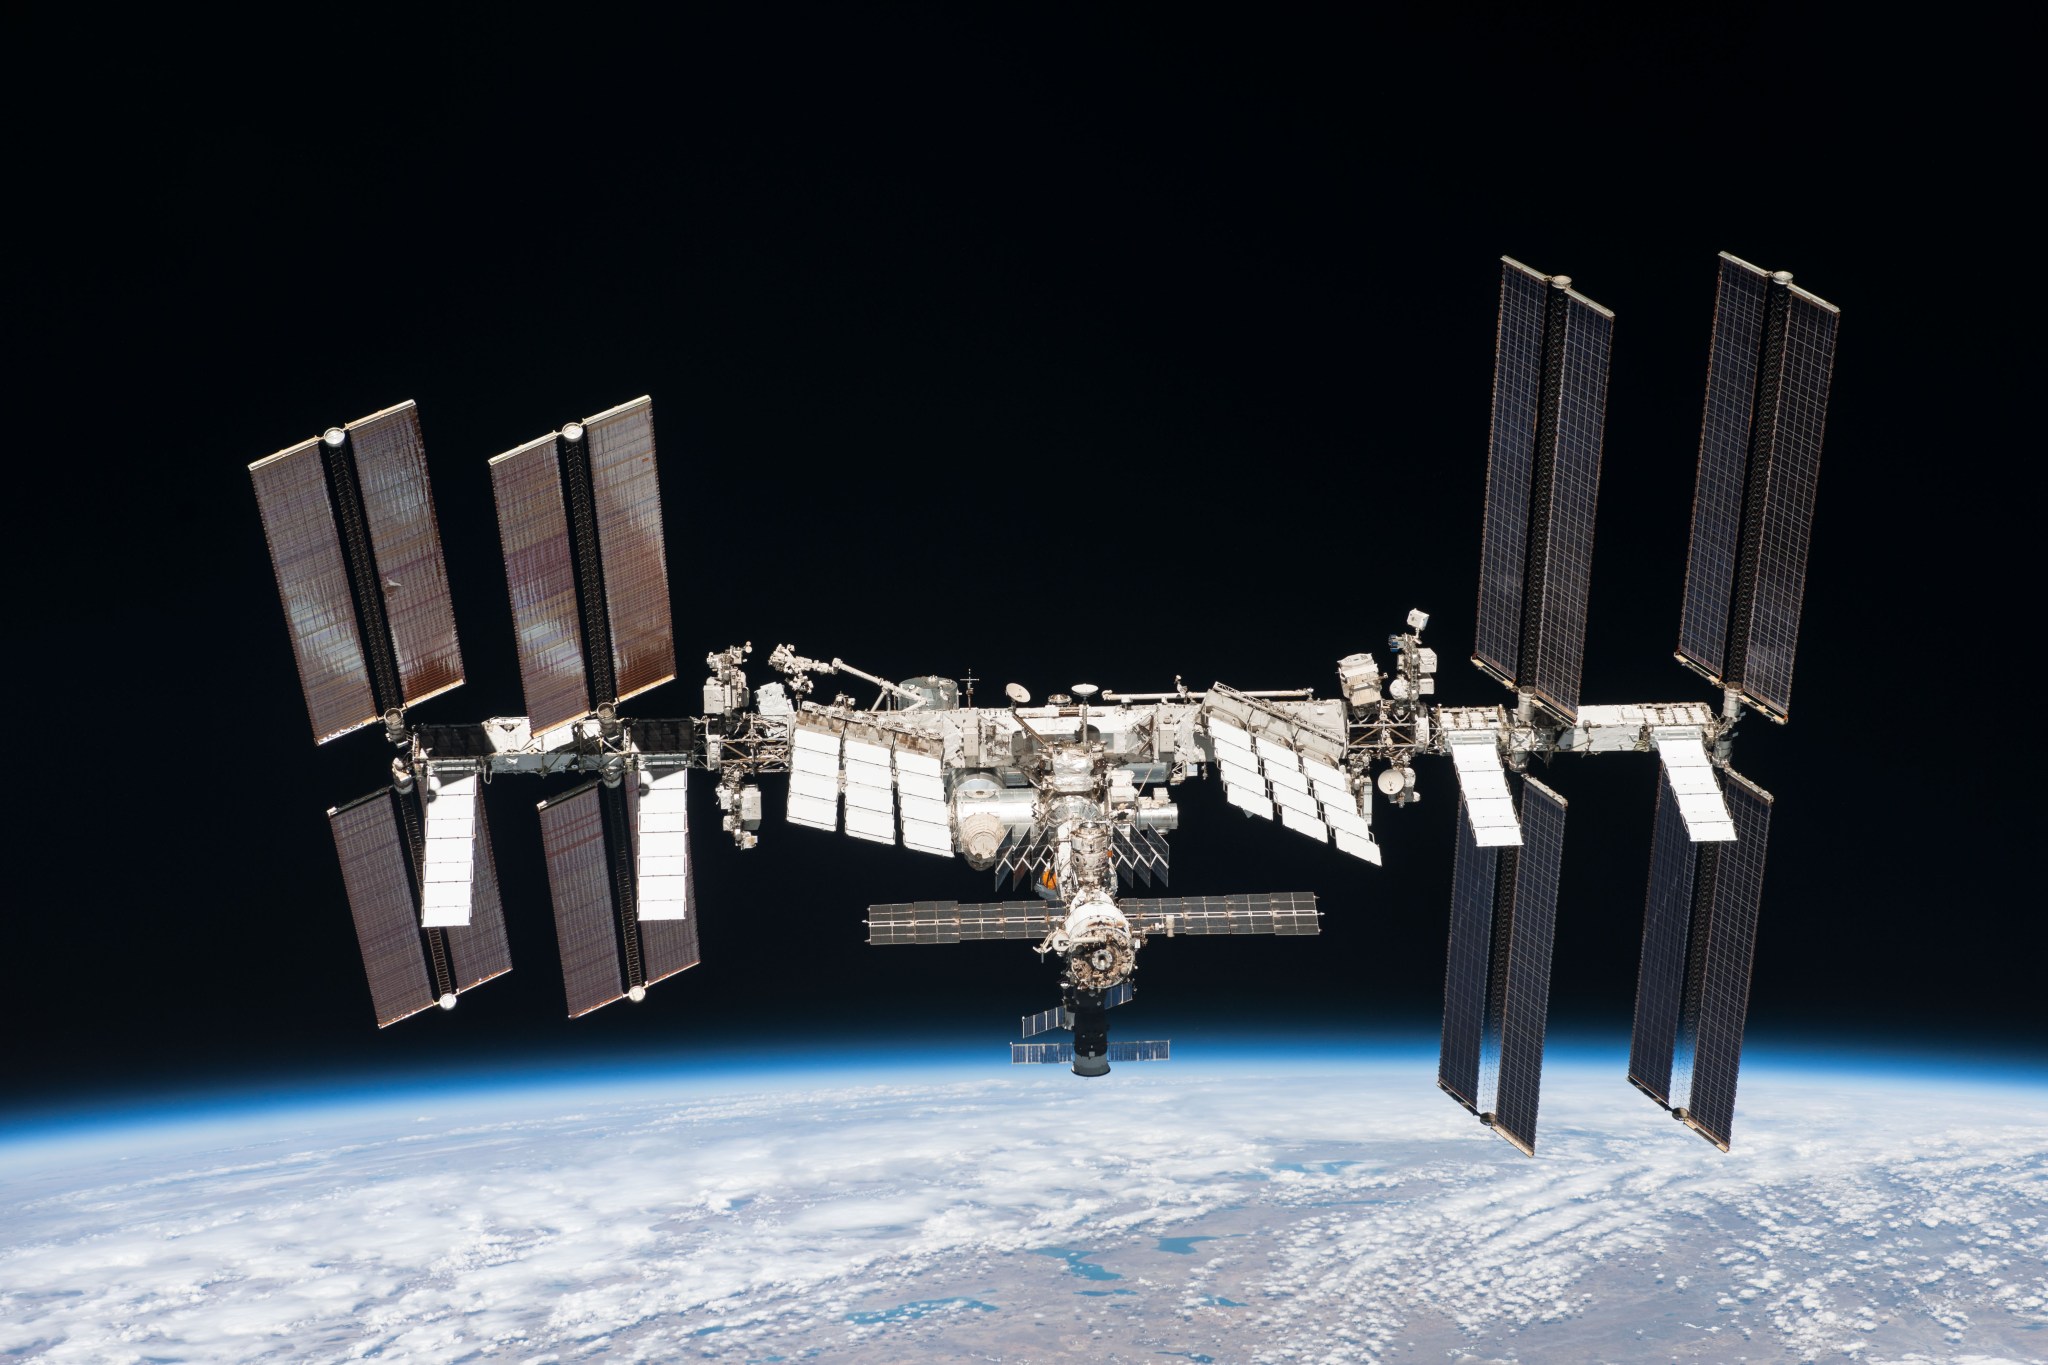 international space station desktop models